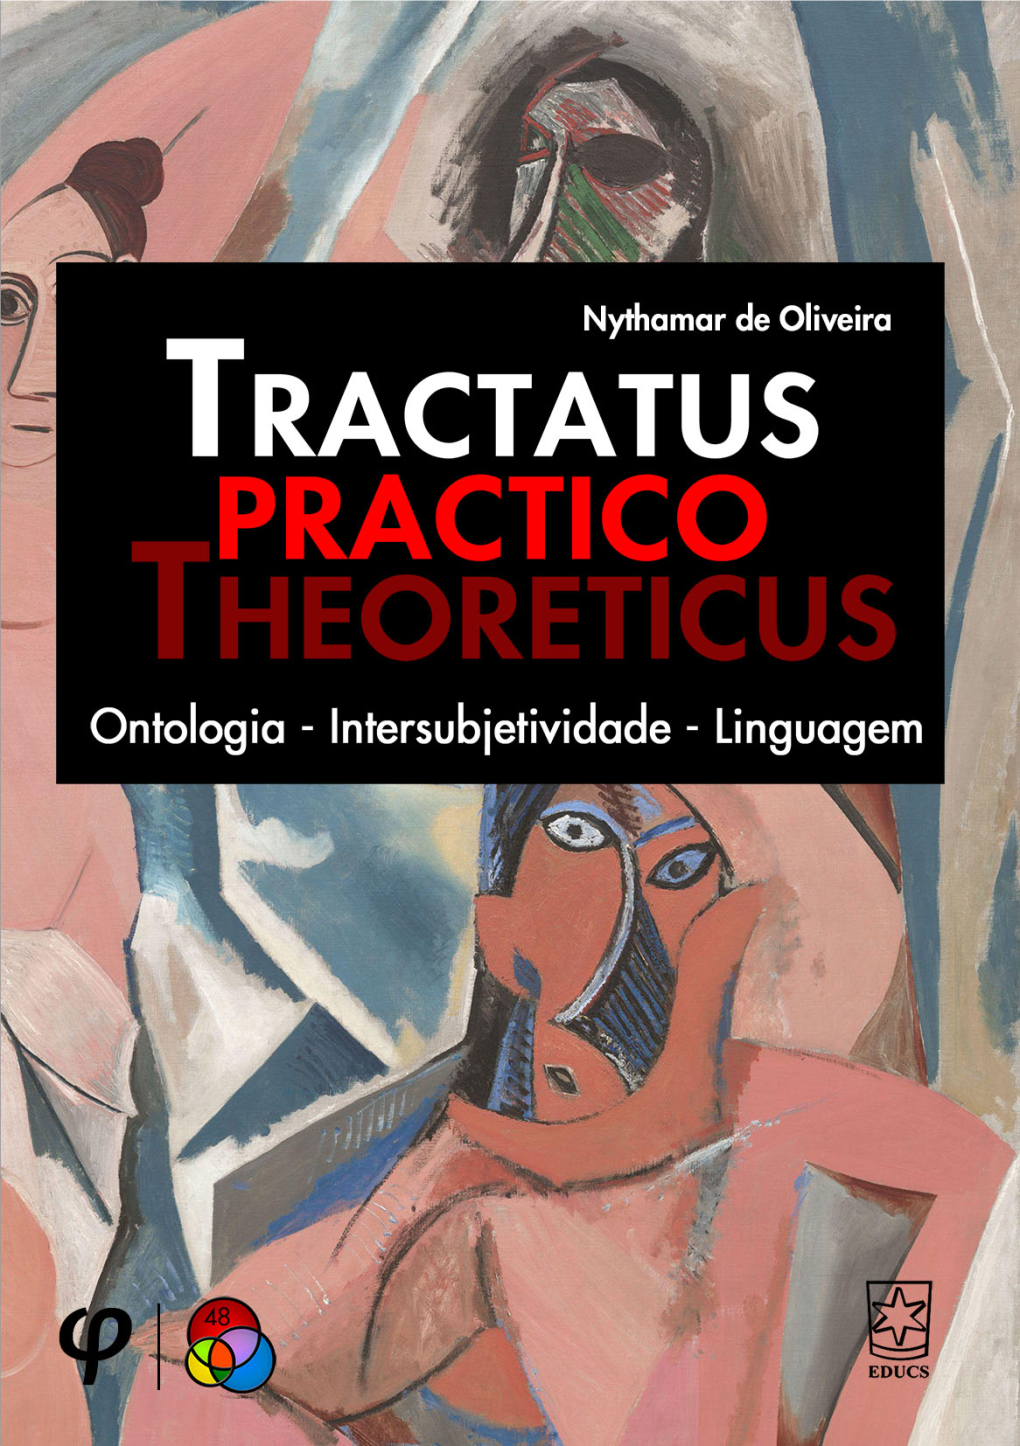 Tractatus Practico-Theoreticus: Ontologia, Intersubjetividade, Linguagem